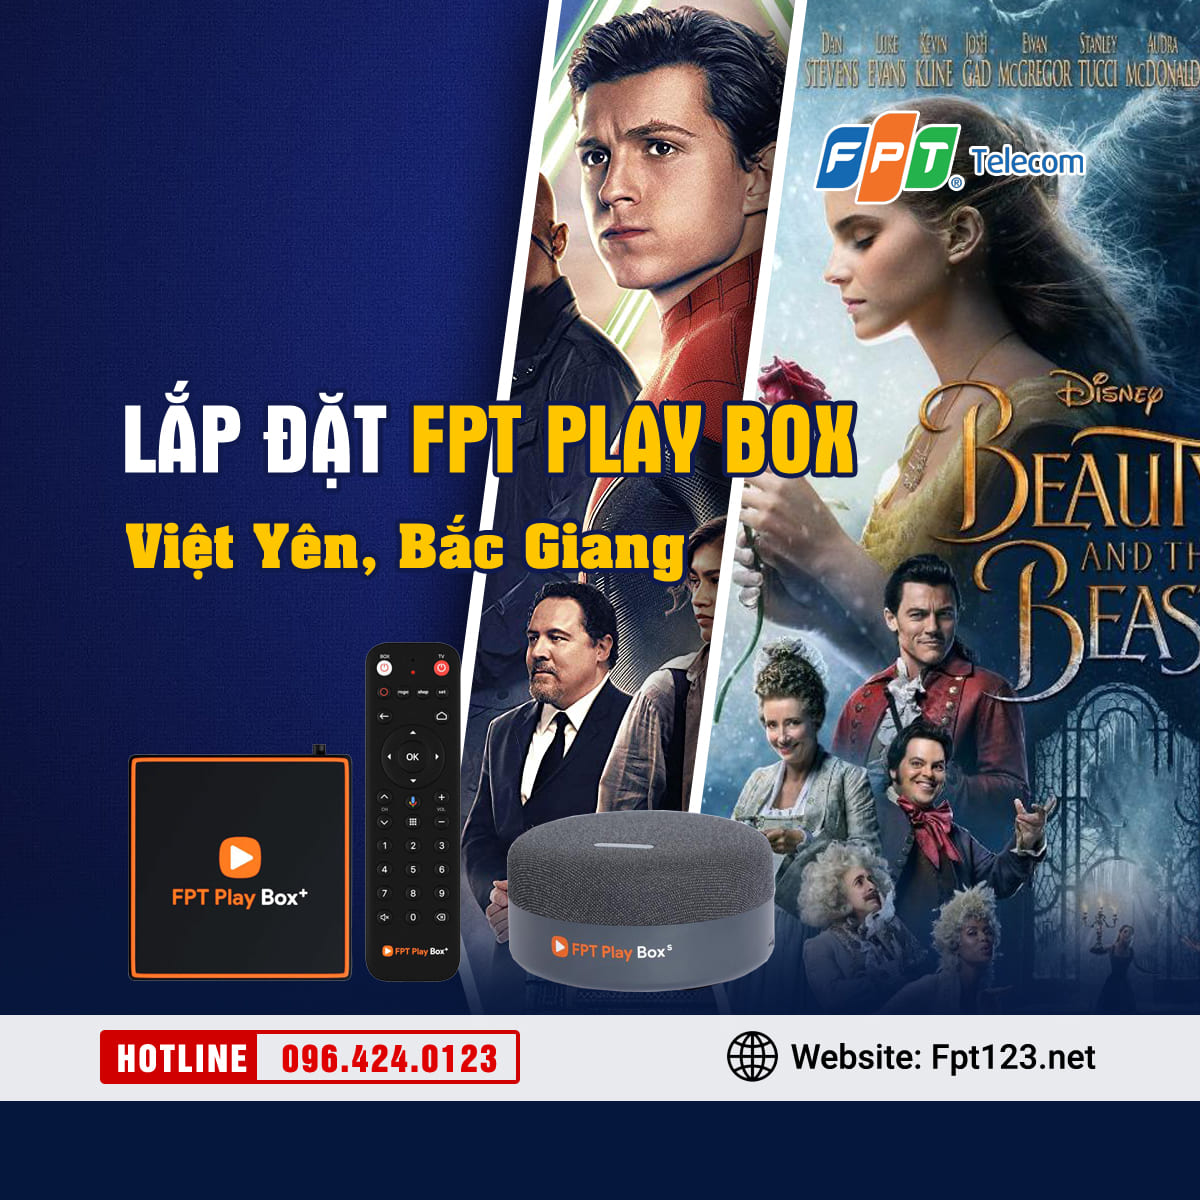 Lắp đặt FPT Play Box ở huyện Việt Yên, Bắc Giang